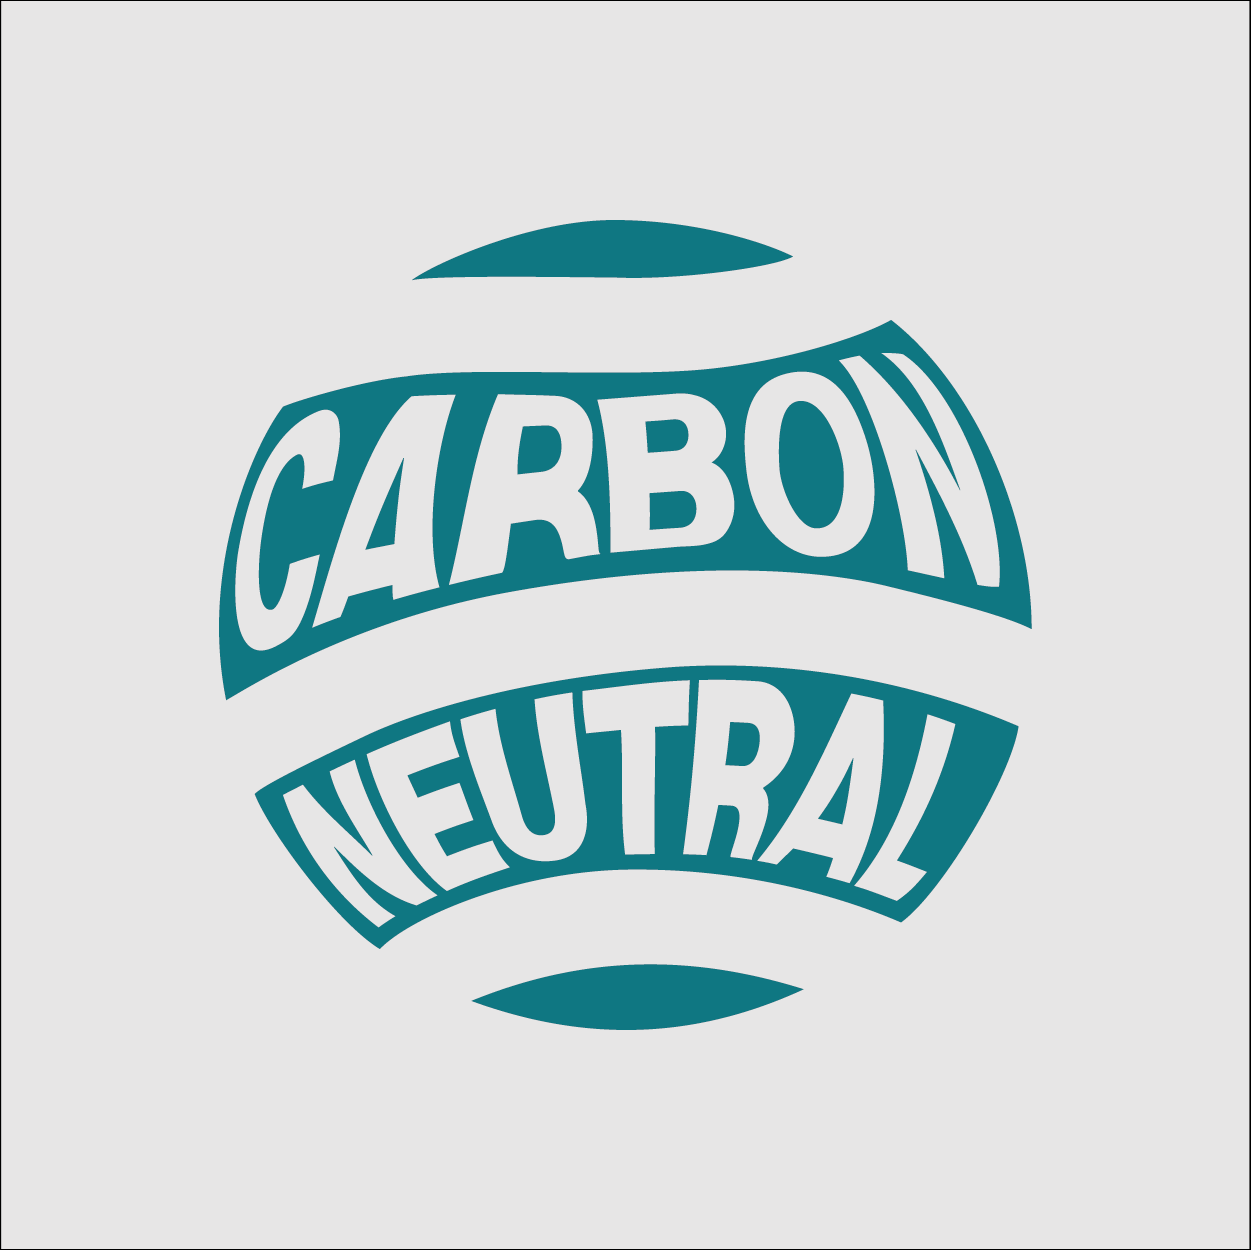 Sealand’s Carbon-Neutral journey